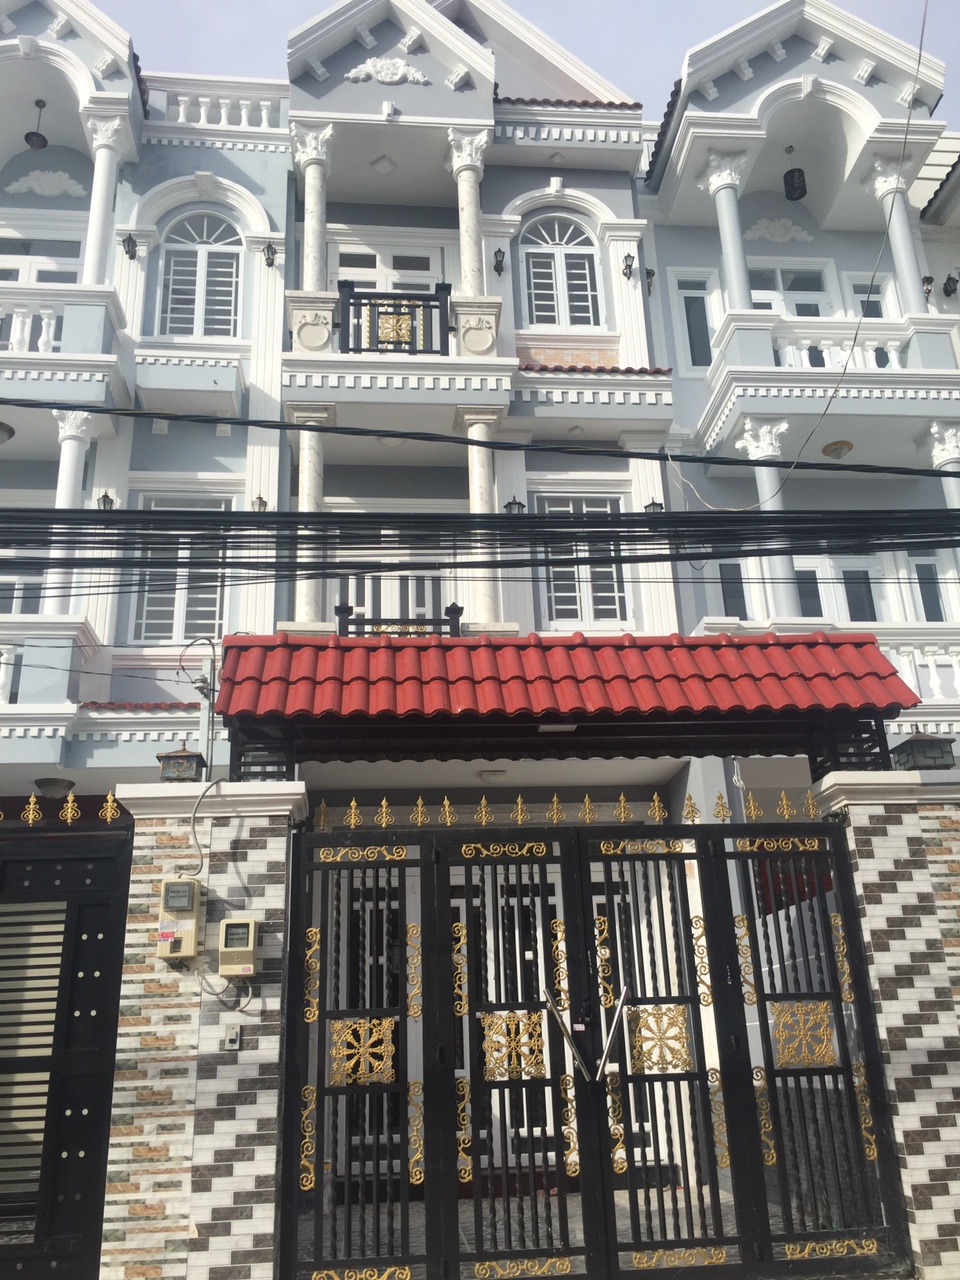 Cần bán gấp nhà đẹp, sang trọng, Huỳnh Tấn Phát, Nhà Bè. DT 4x18m, 2 lầu, giá 3,38 tỷ